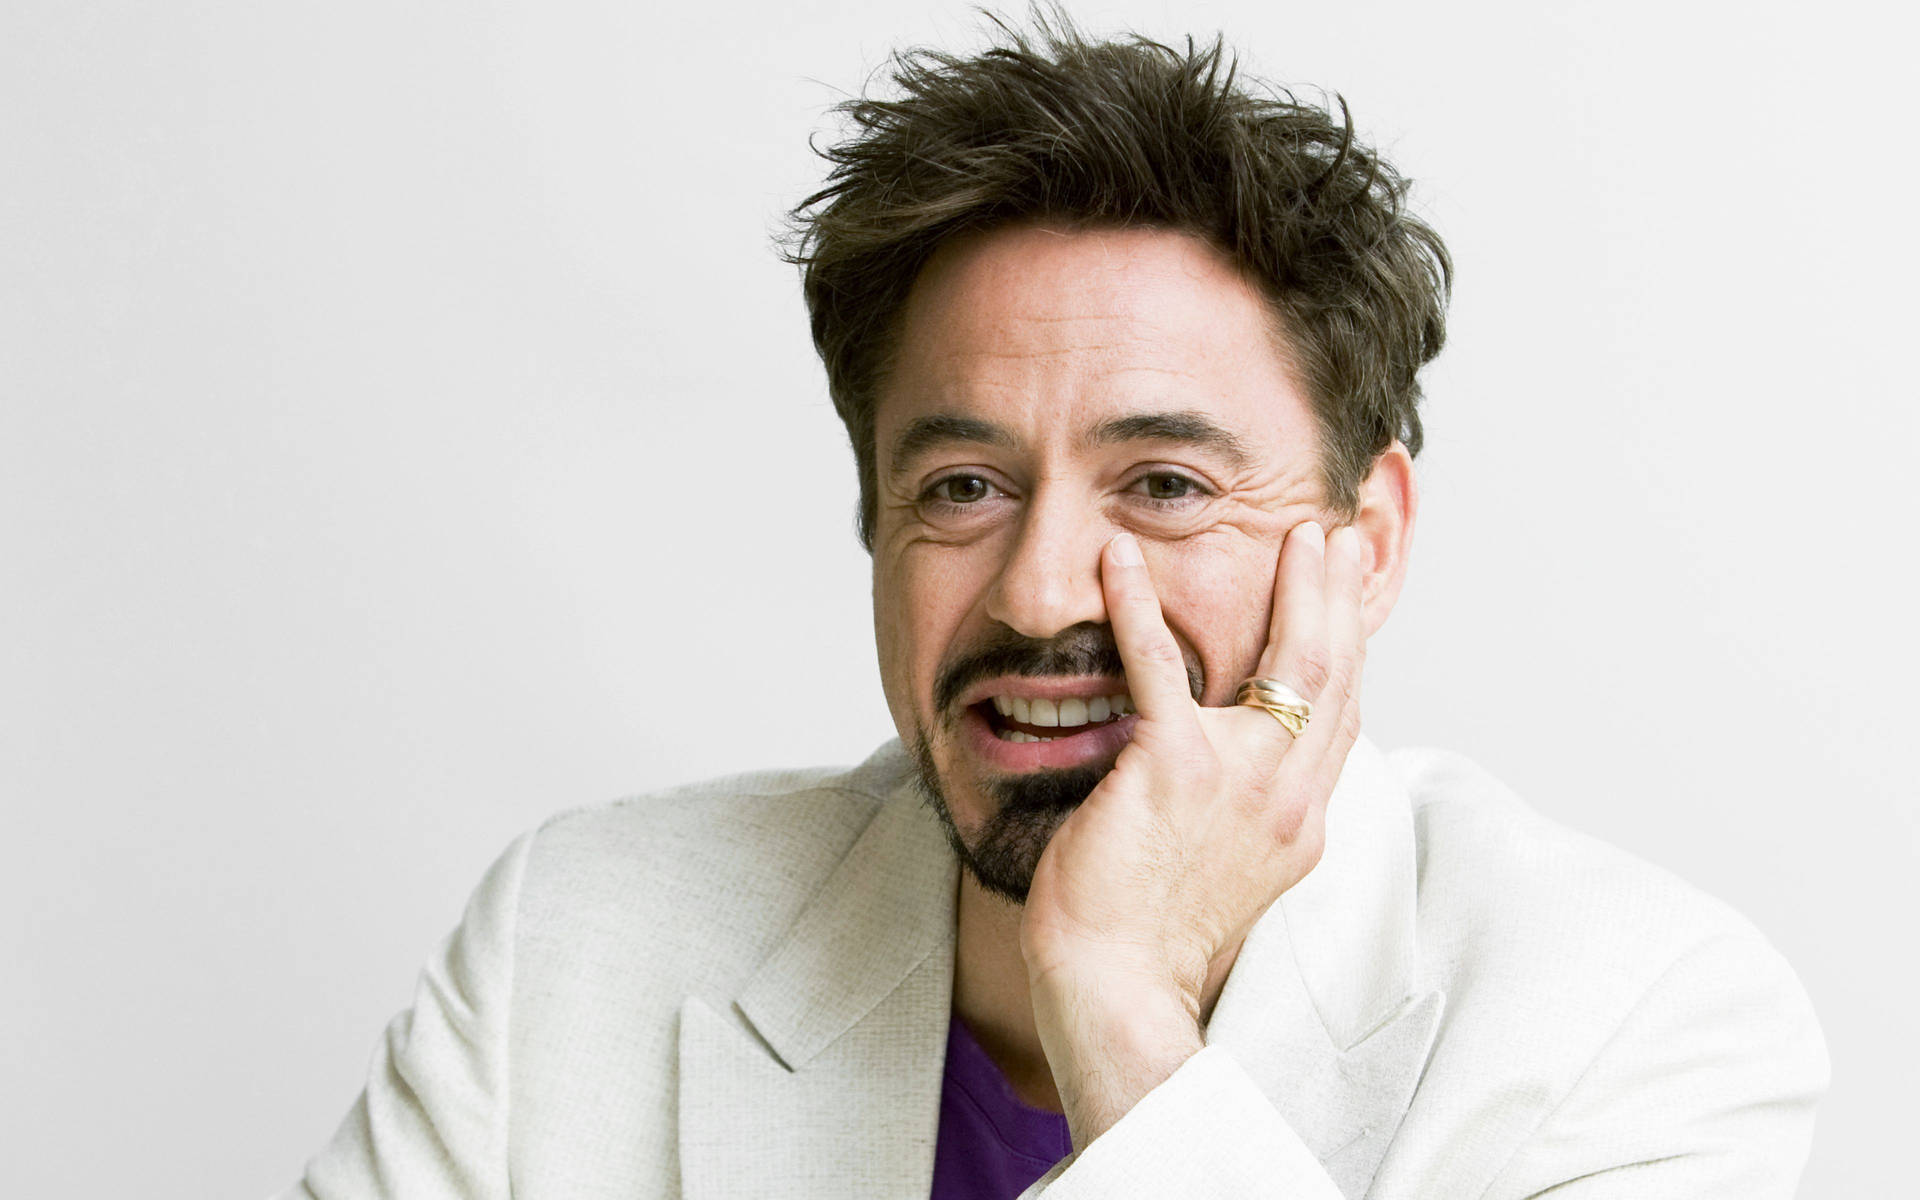 Robert Downey Jr Actor Hd Wallpaper - All Hd Wallpaper Background